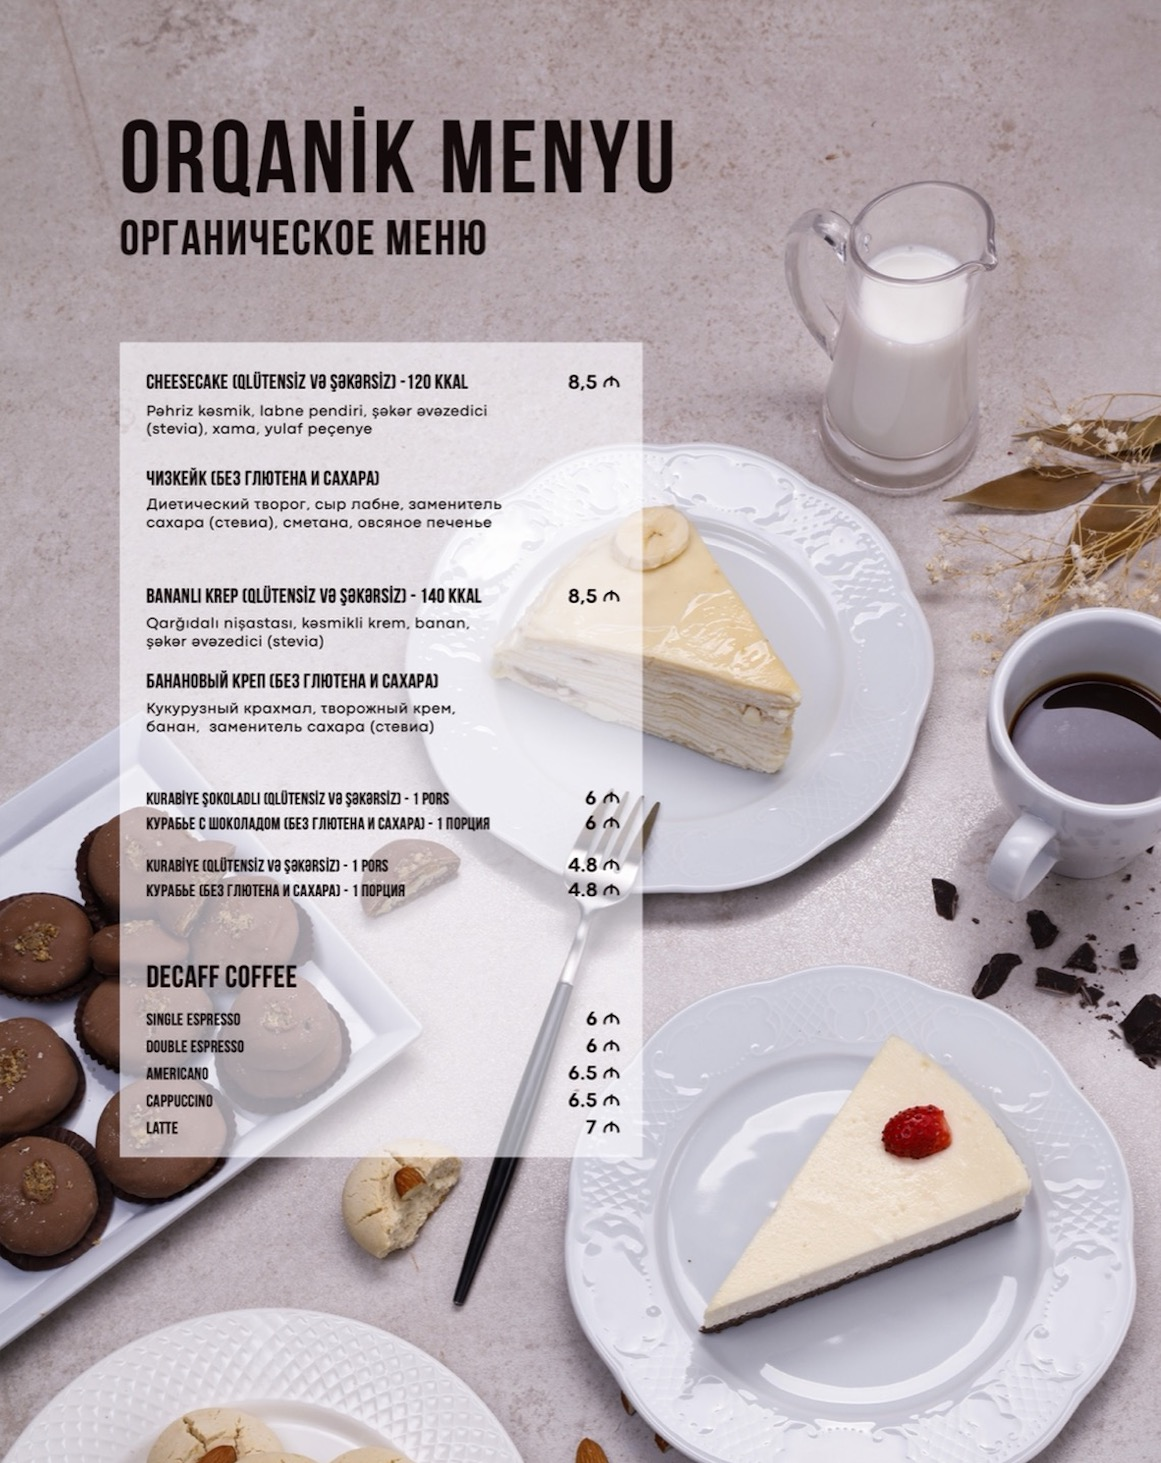 Ozsut orqanik menu cover